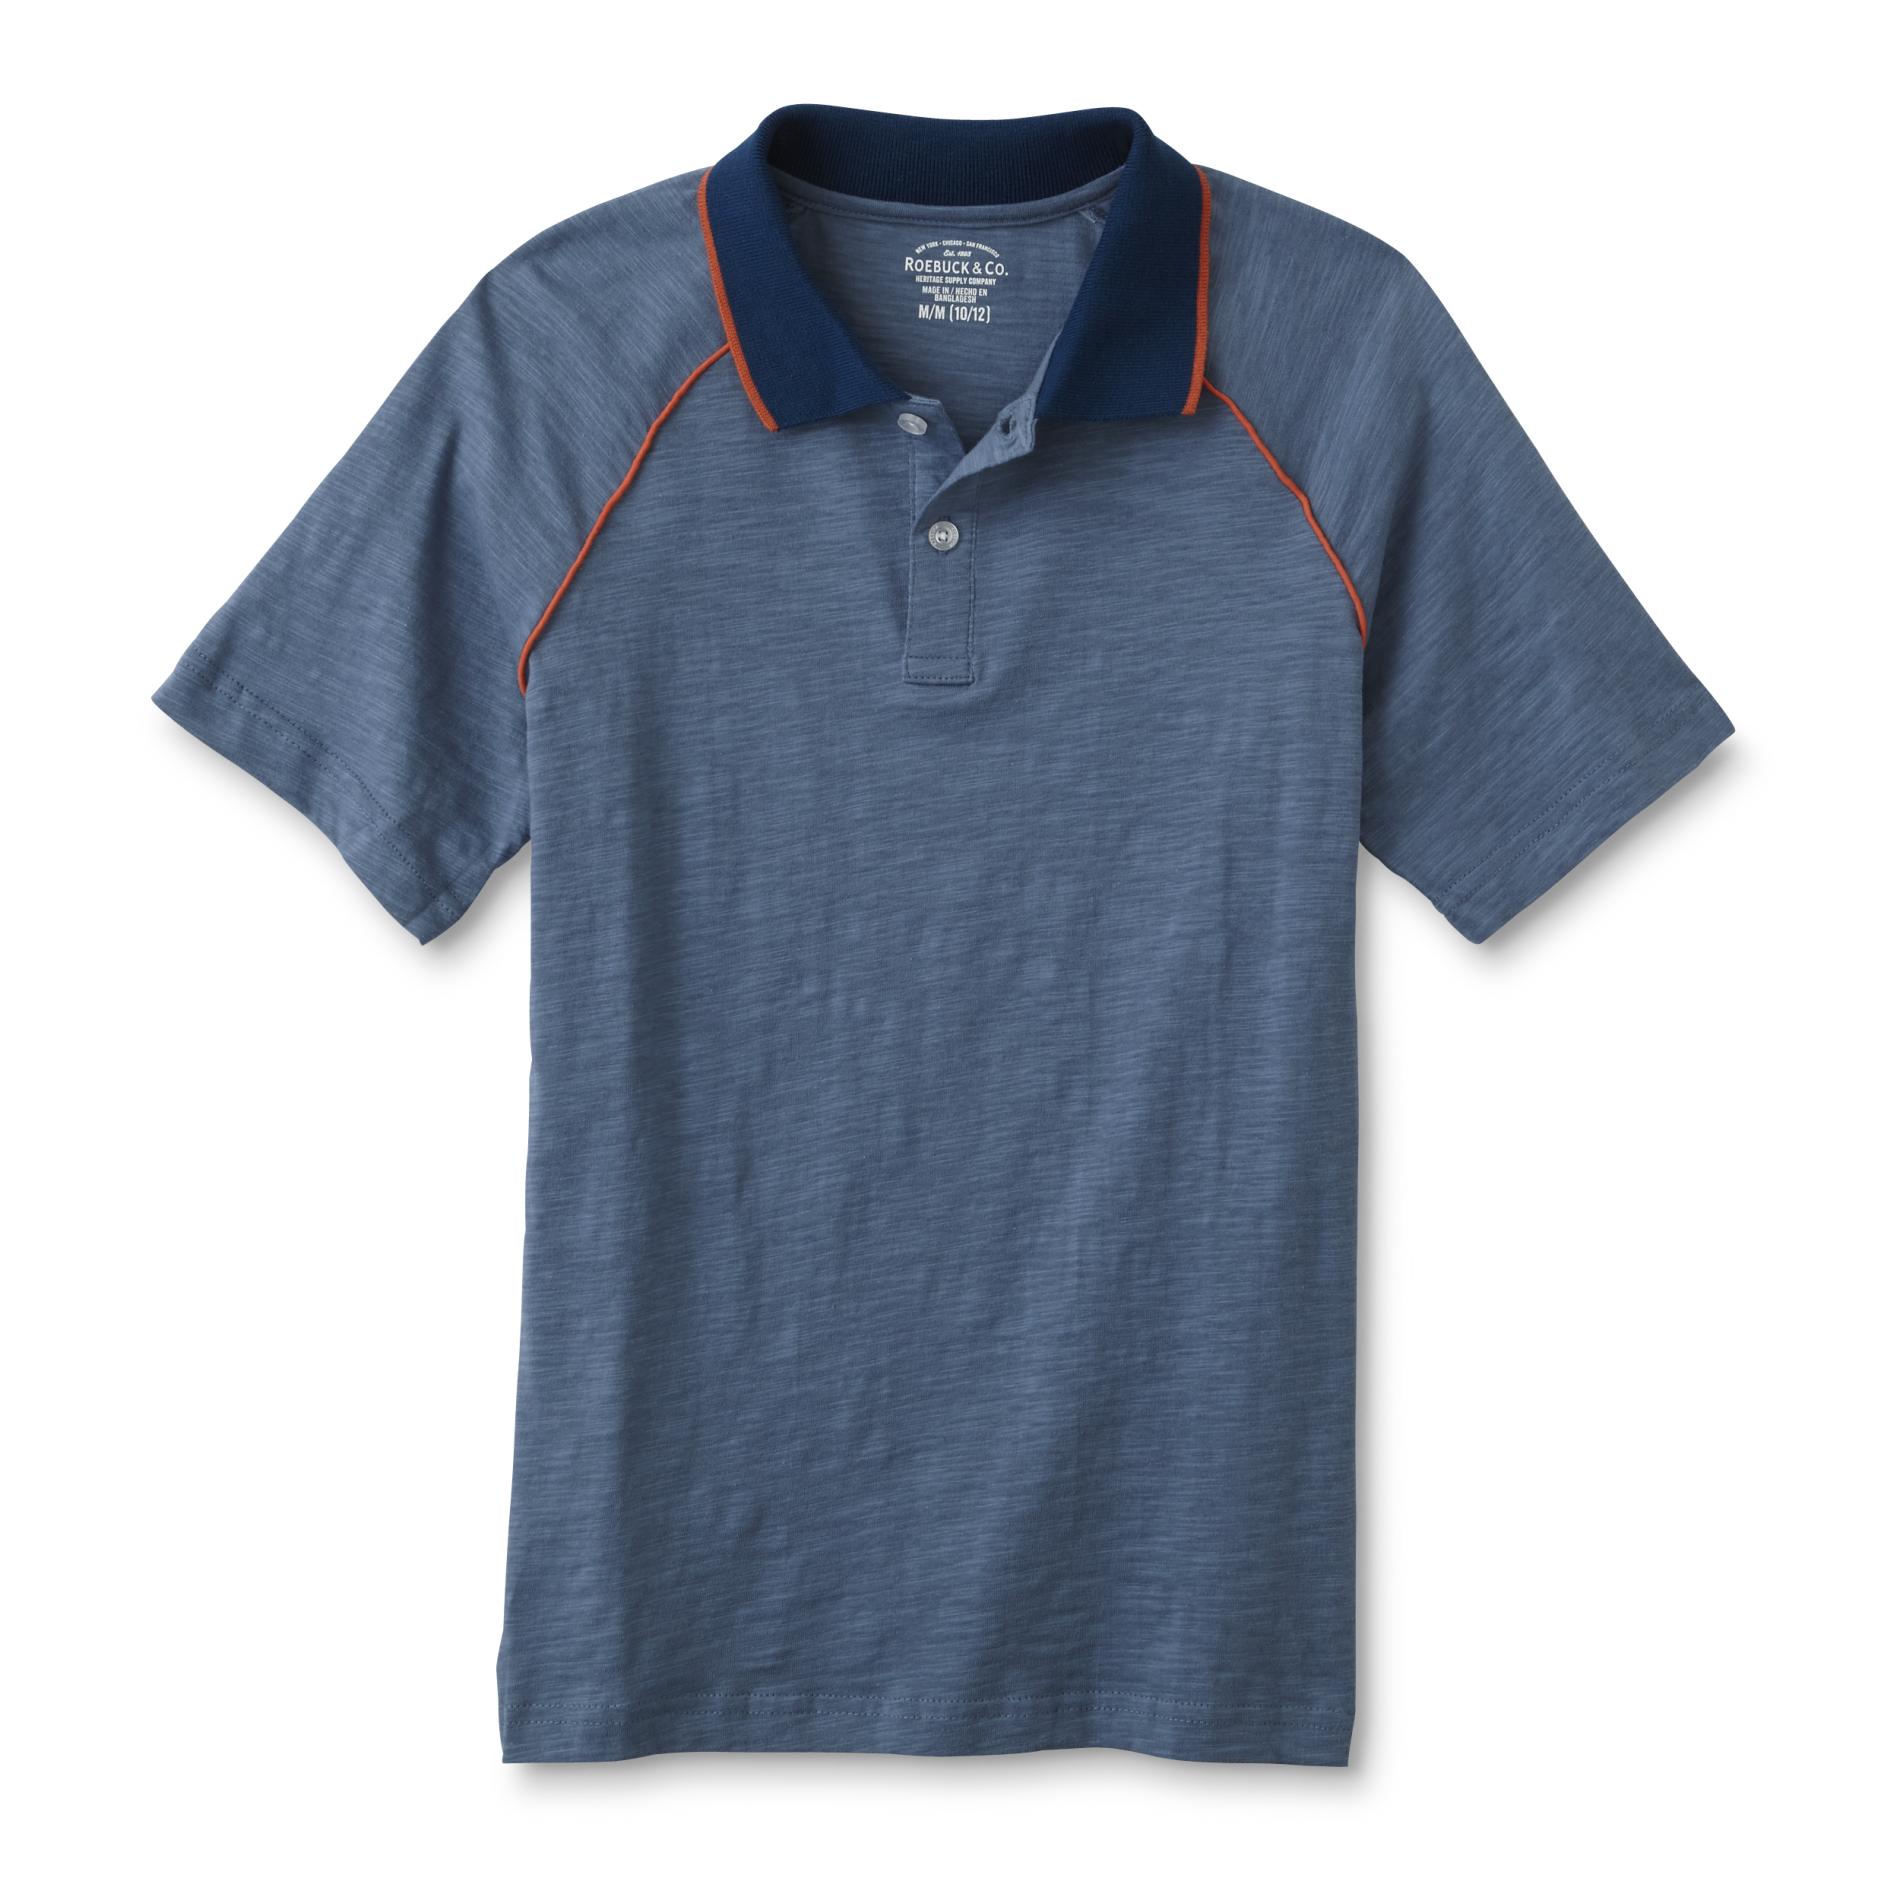 Roebuck & Co. Boys' Slub Knit Polo Shirt